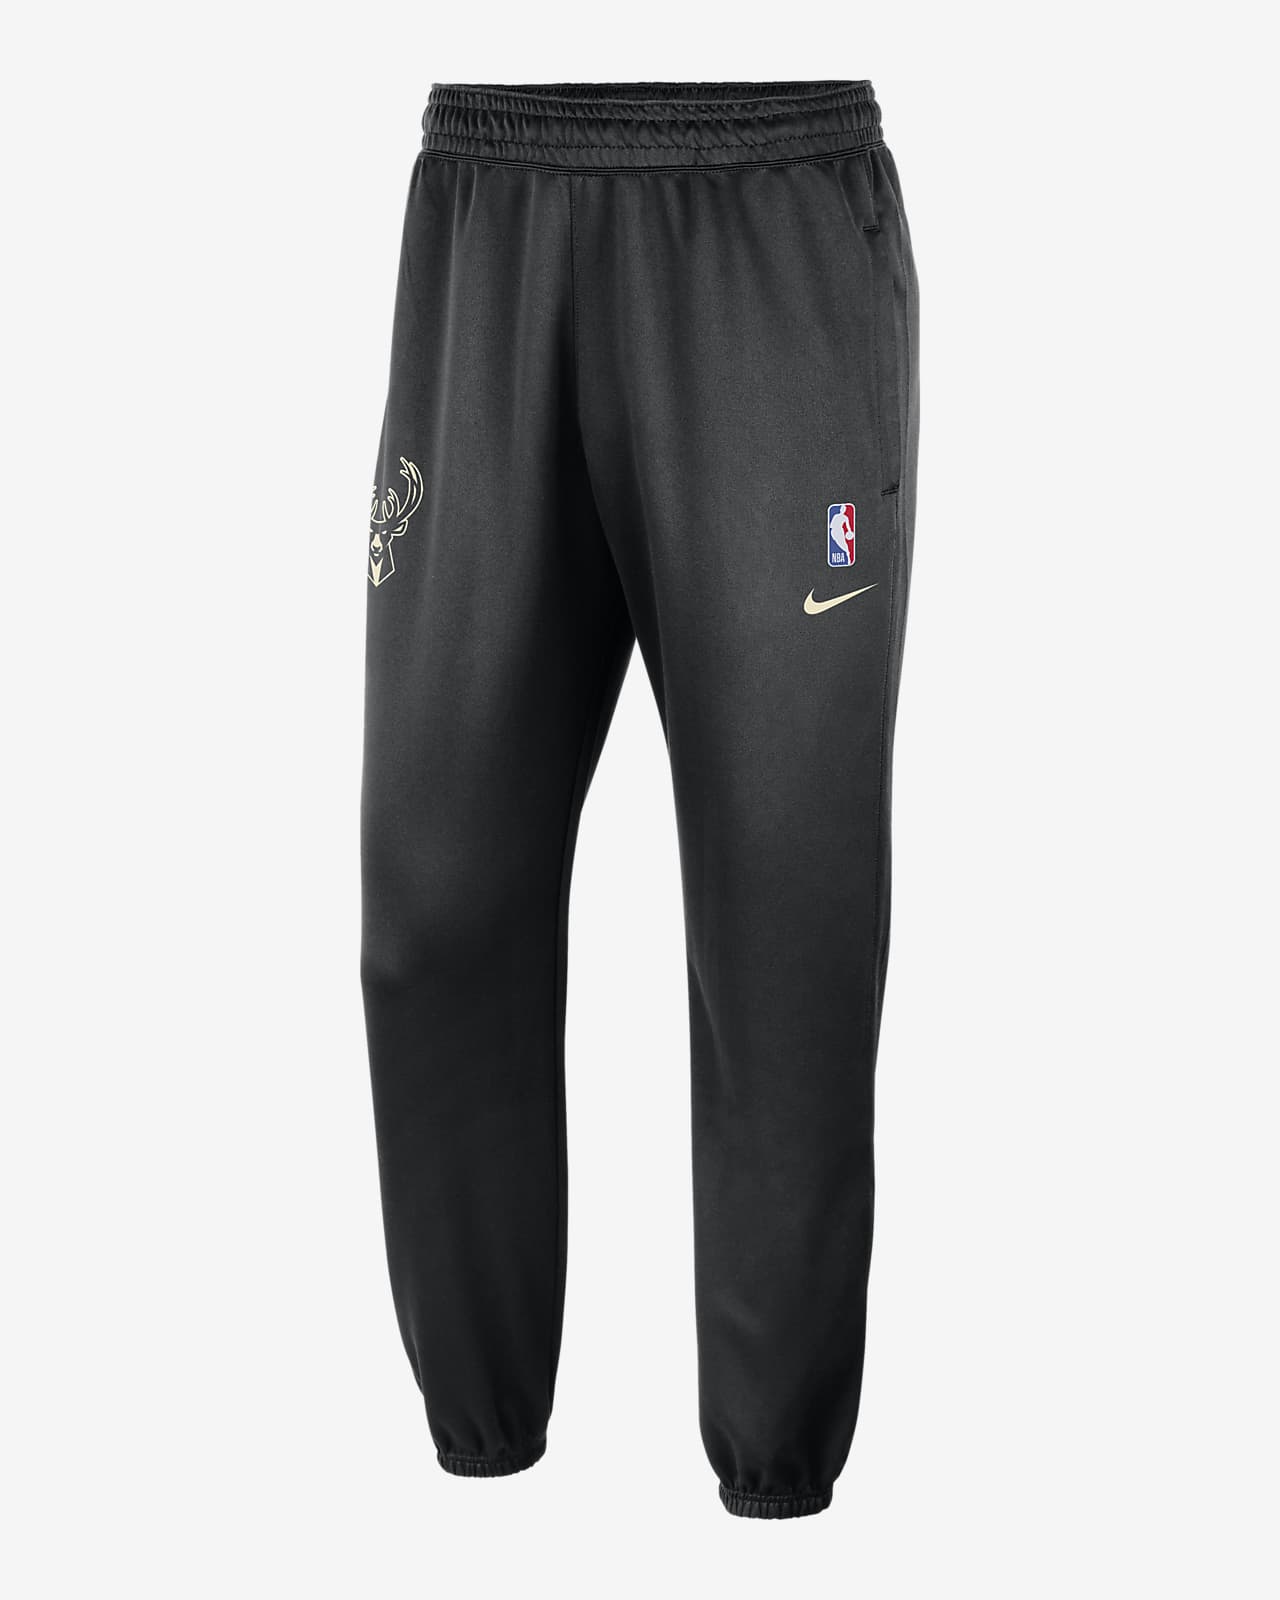 NBA Pants, NBA Pants